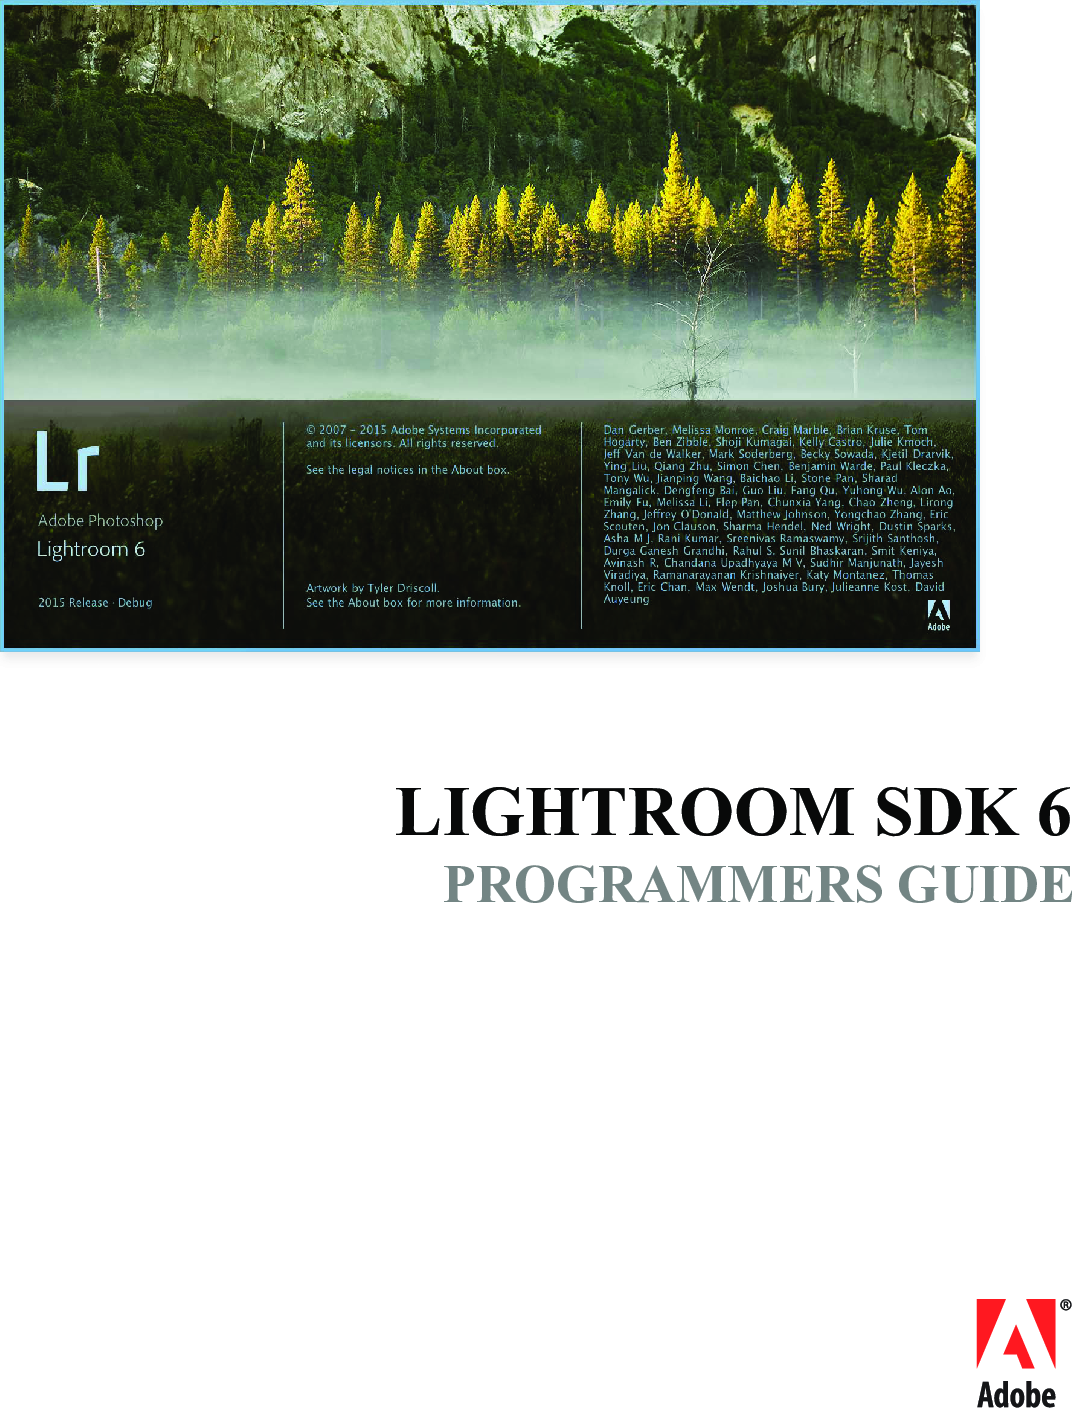 lightroom 6 tutorial pdf